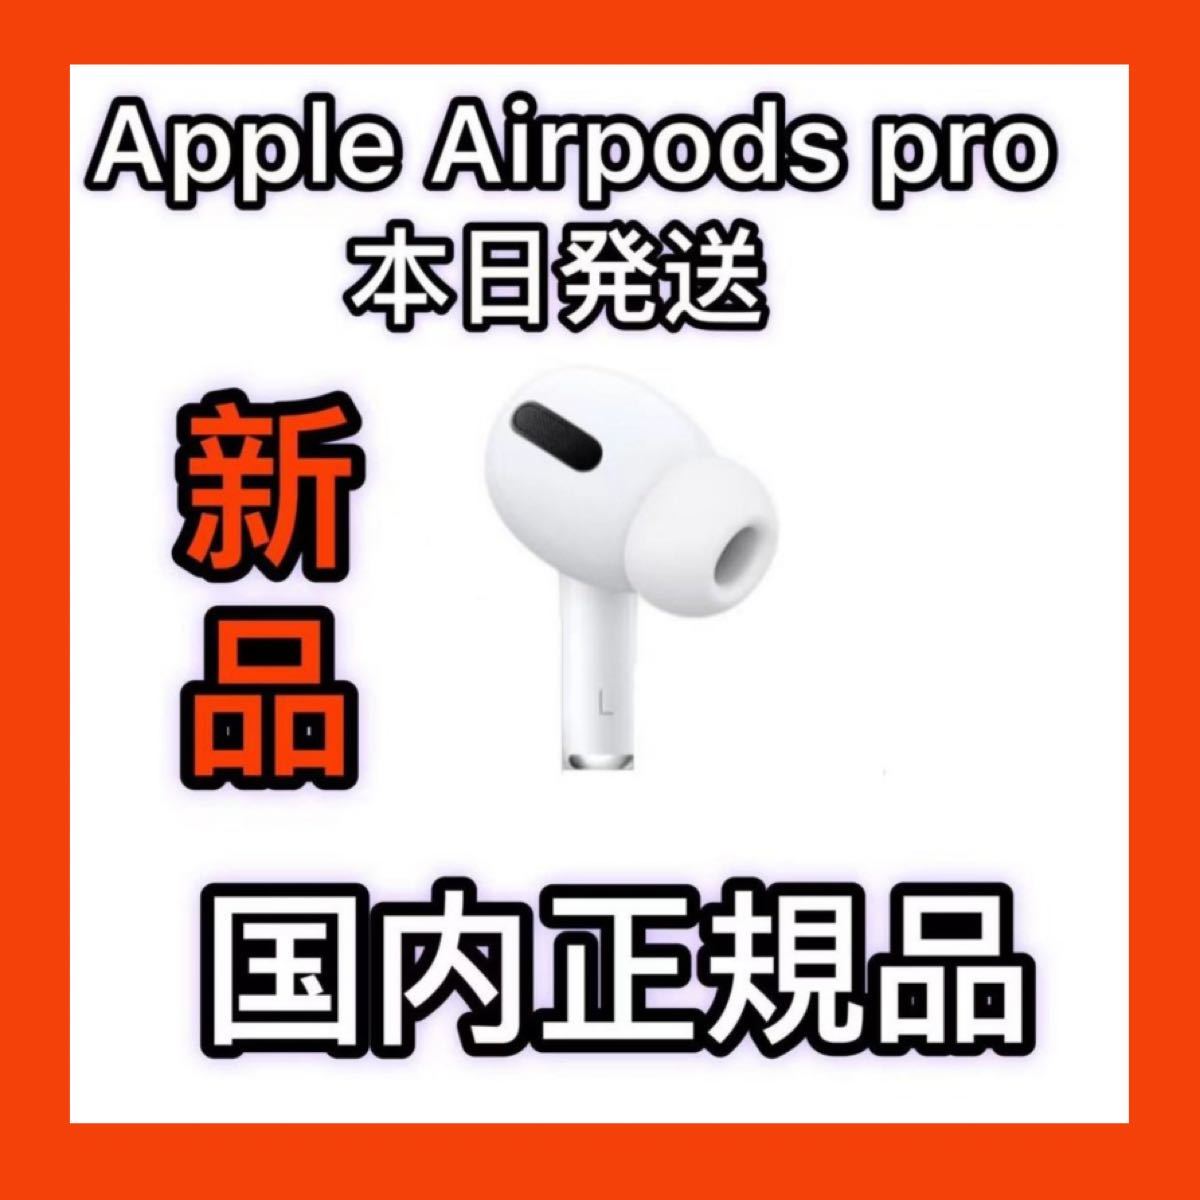 Apple純正品 エアーポッズプロ 左耳のみ AirPods Pro 新品｜PayPayフリマ